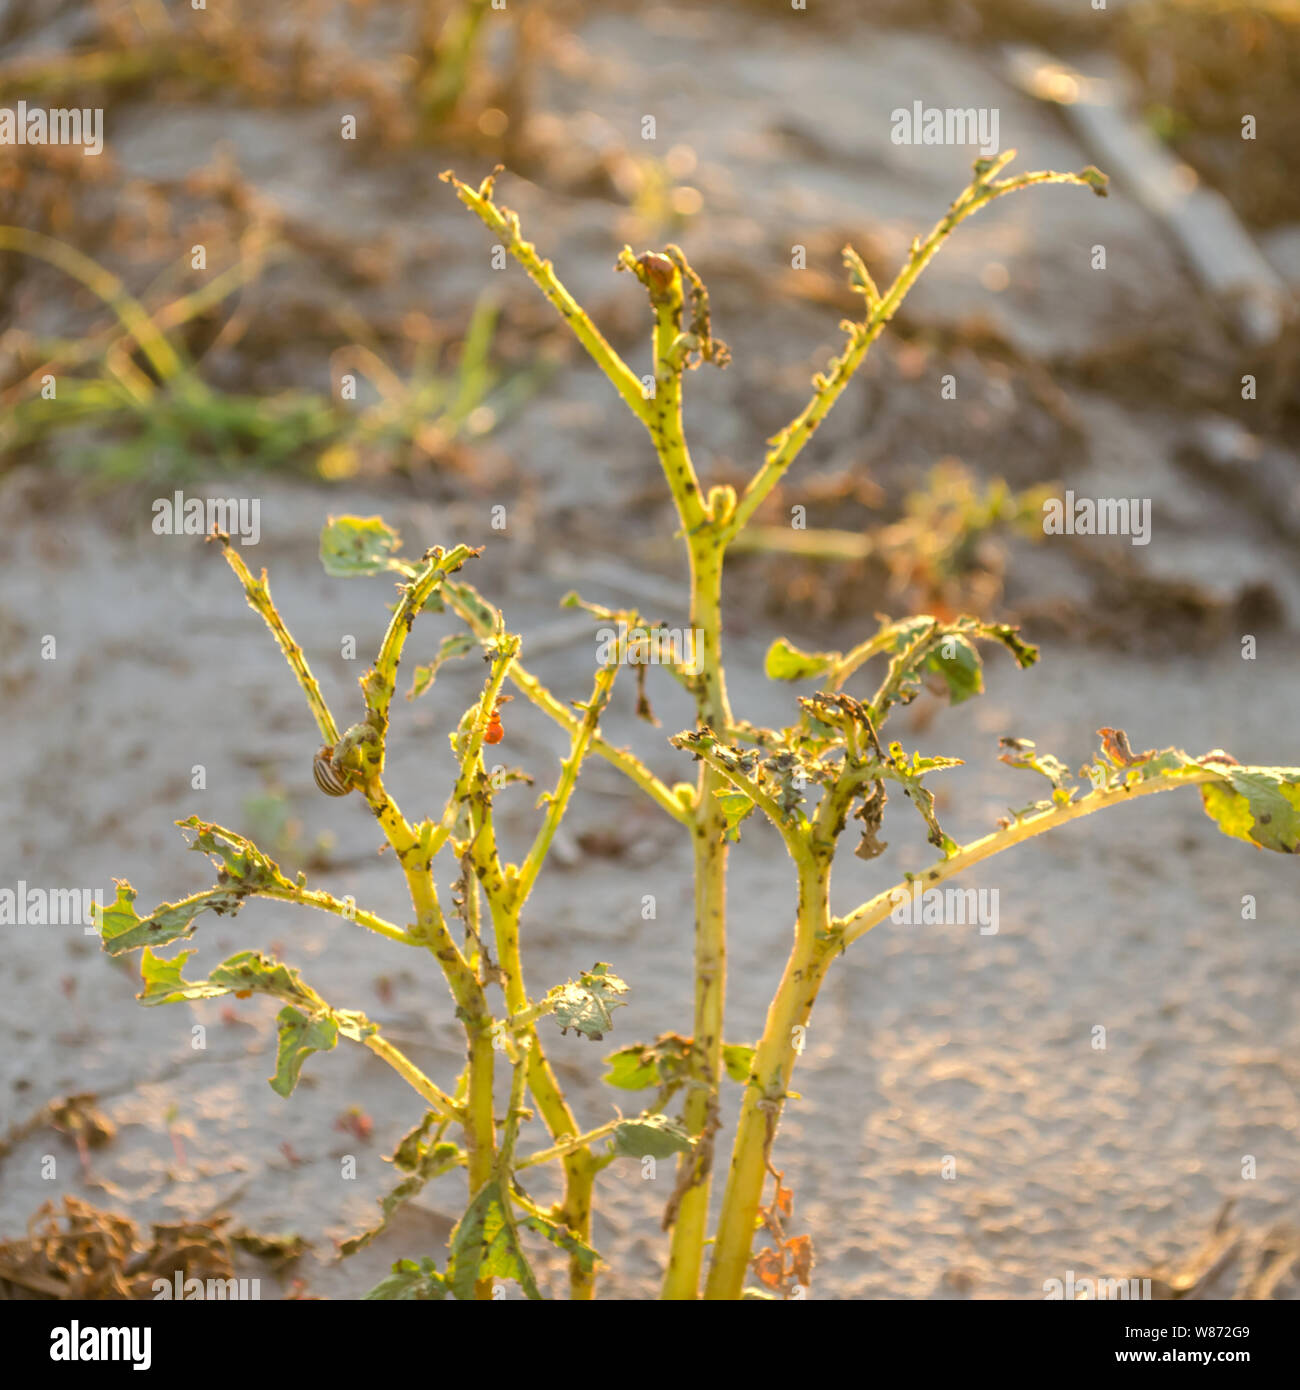 Le doryphore (Leptinotarsa decemlineata) assis sur une pomme de terre. Les insectes nuisibles - l'ennemi de l'agriculteur. Les risques de perte de récolte. L'agriculture et l'élevage. Banque D'Images